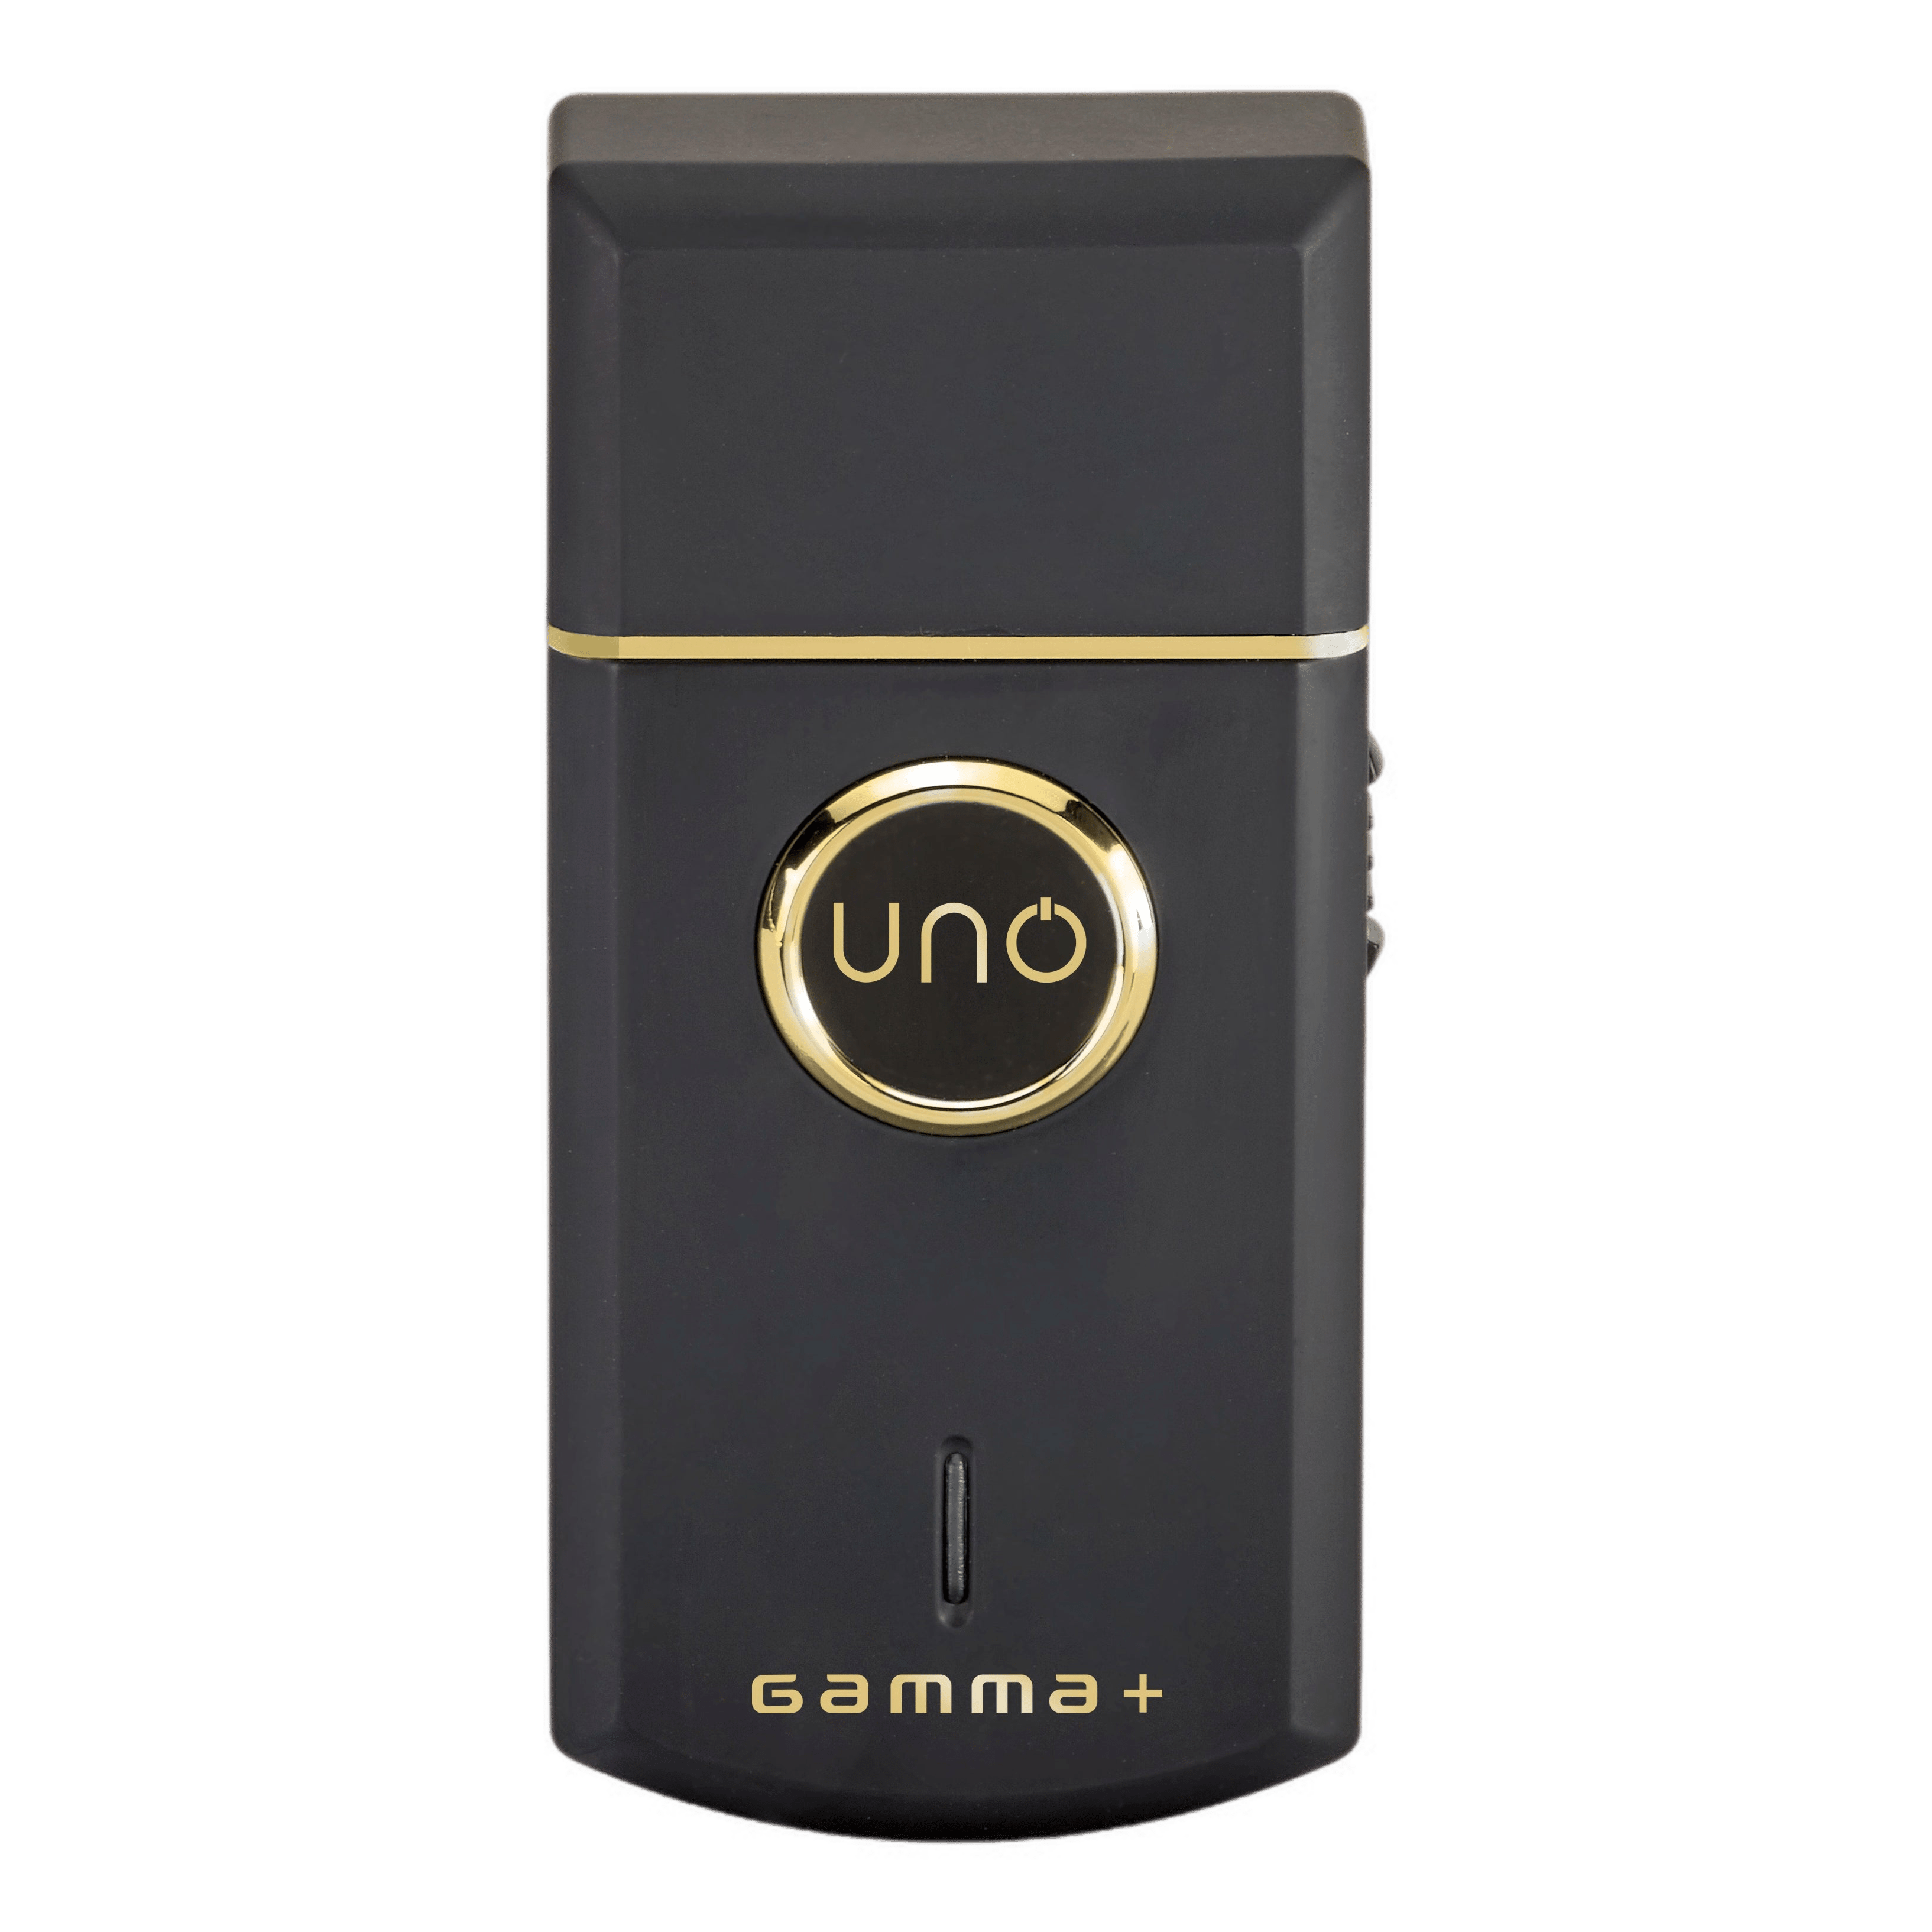 Gamma + Uno shaver